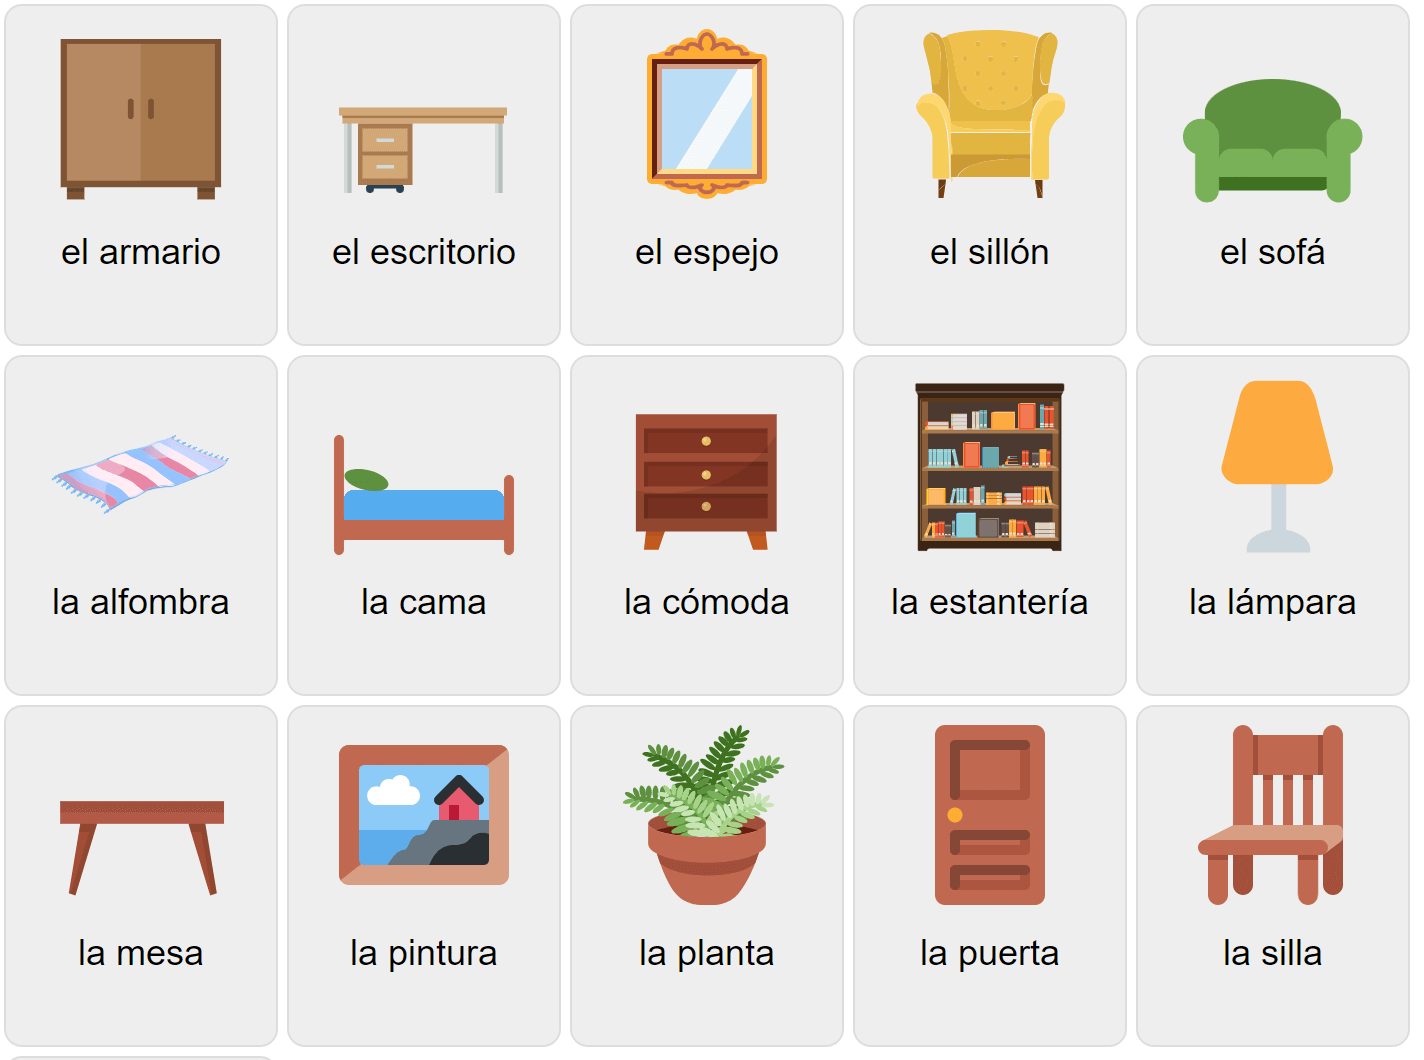 Мебель на испанском языке